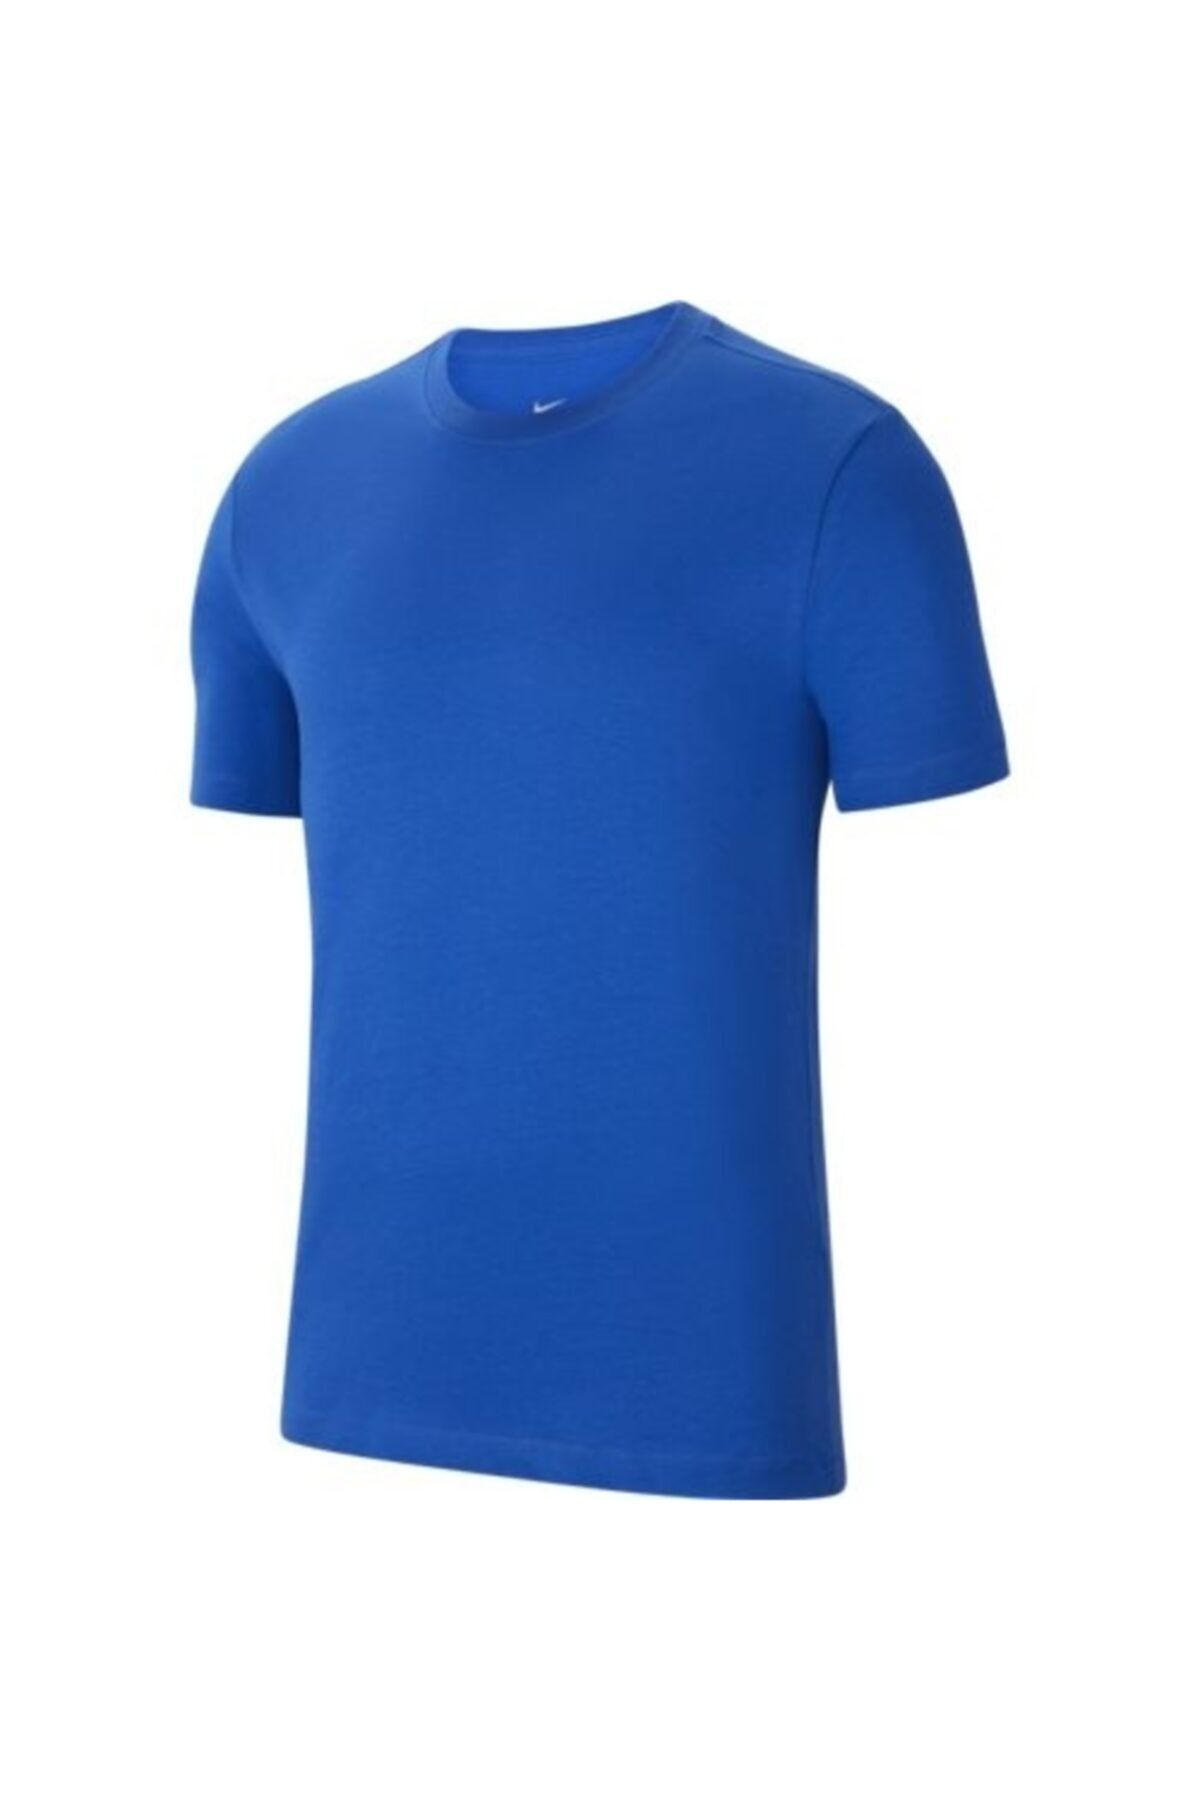 Nike Nıke Team Park 20 Tee Mavi Erkek Tişört - Cz0881-463